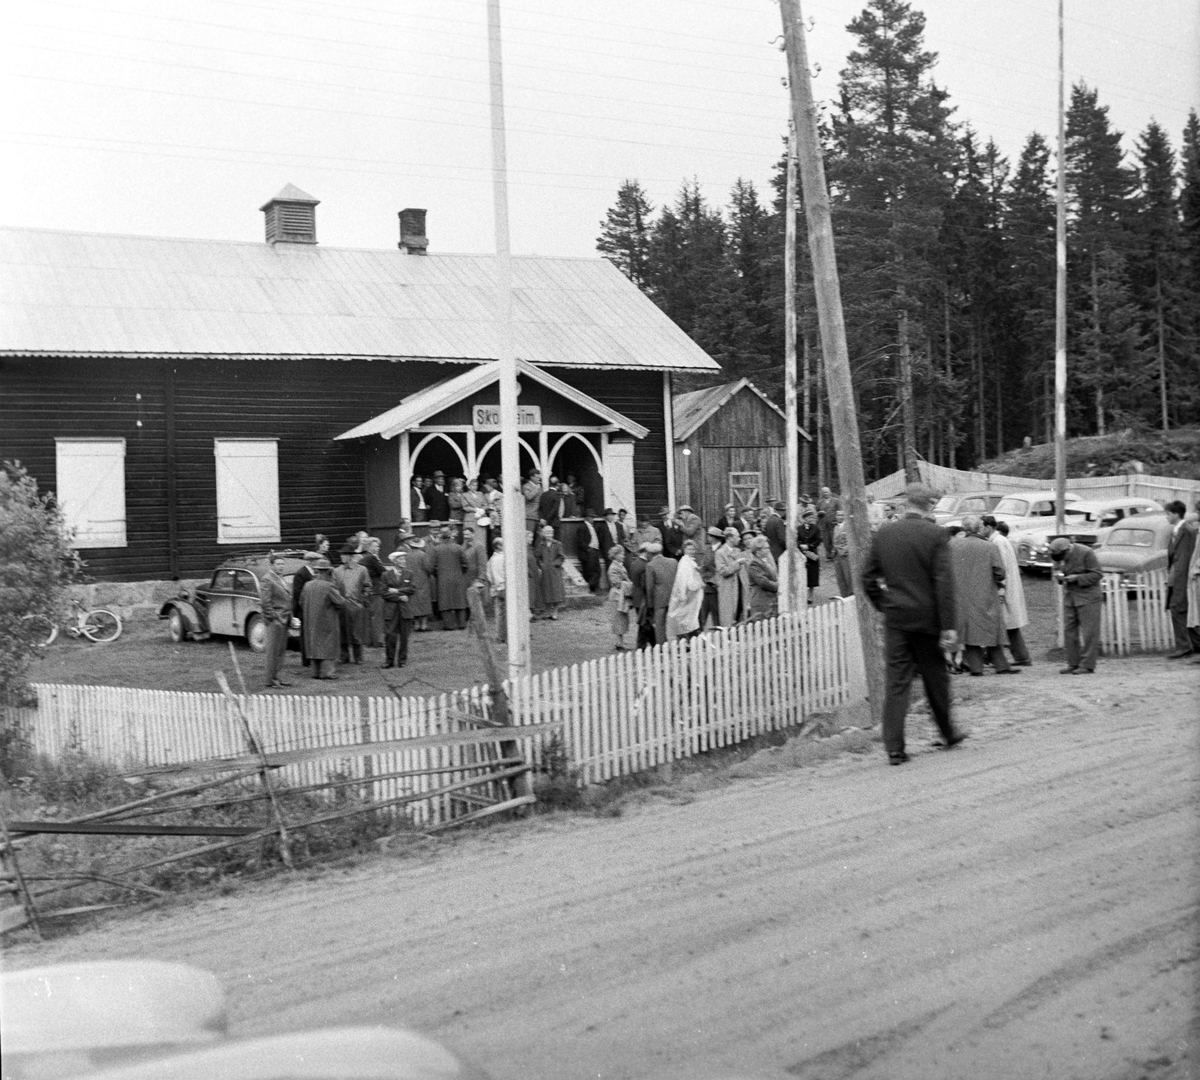 Serie. Fra lokalpremiere på filmen "Finnskog og trollskap". Fotografert  august 1956.

